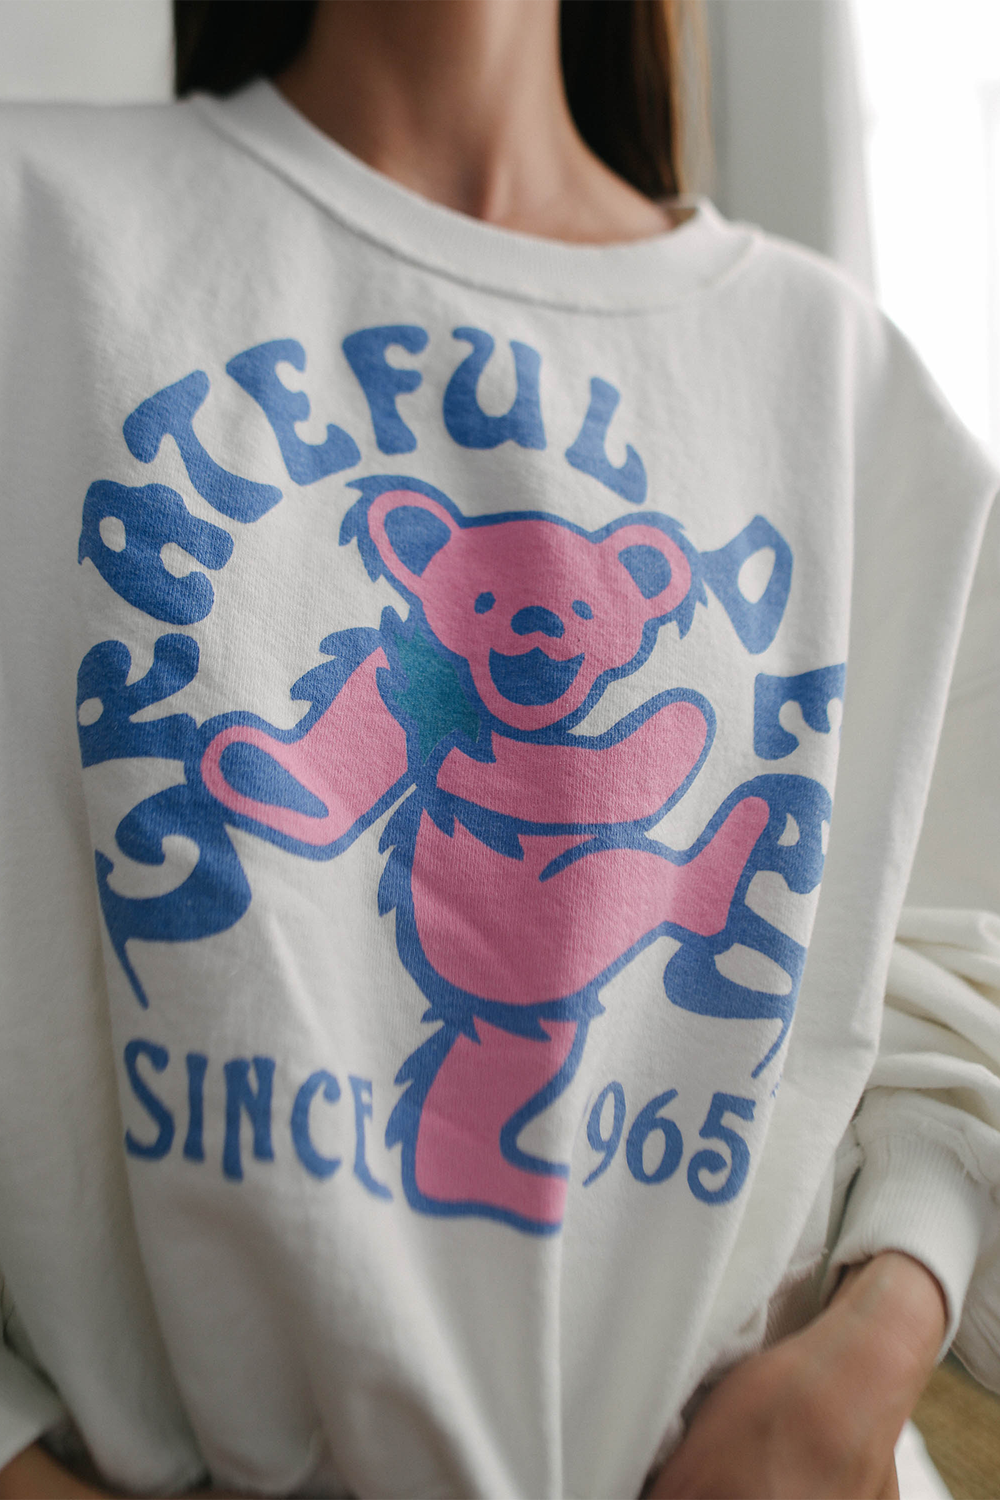 Grateful Dead 1965 Sweatshirt